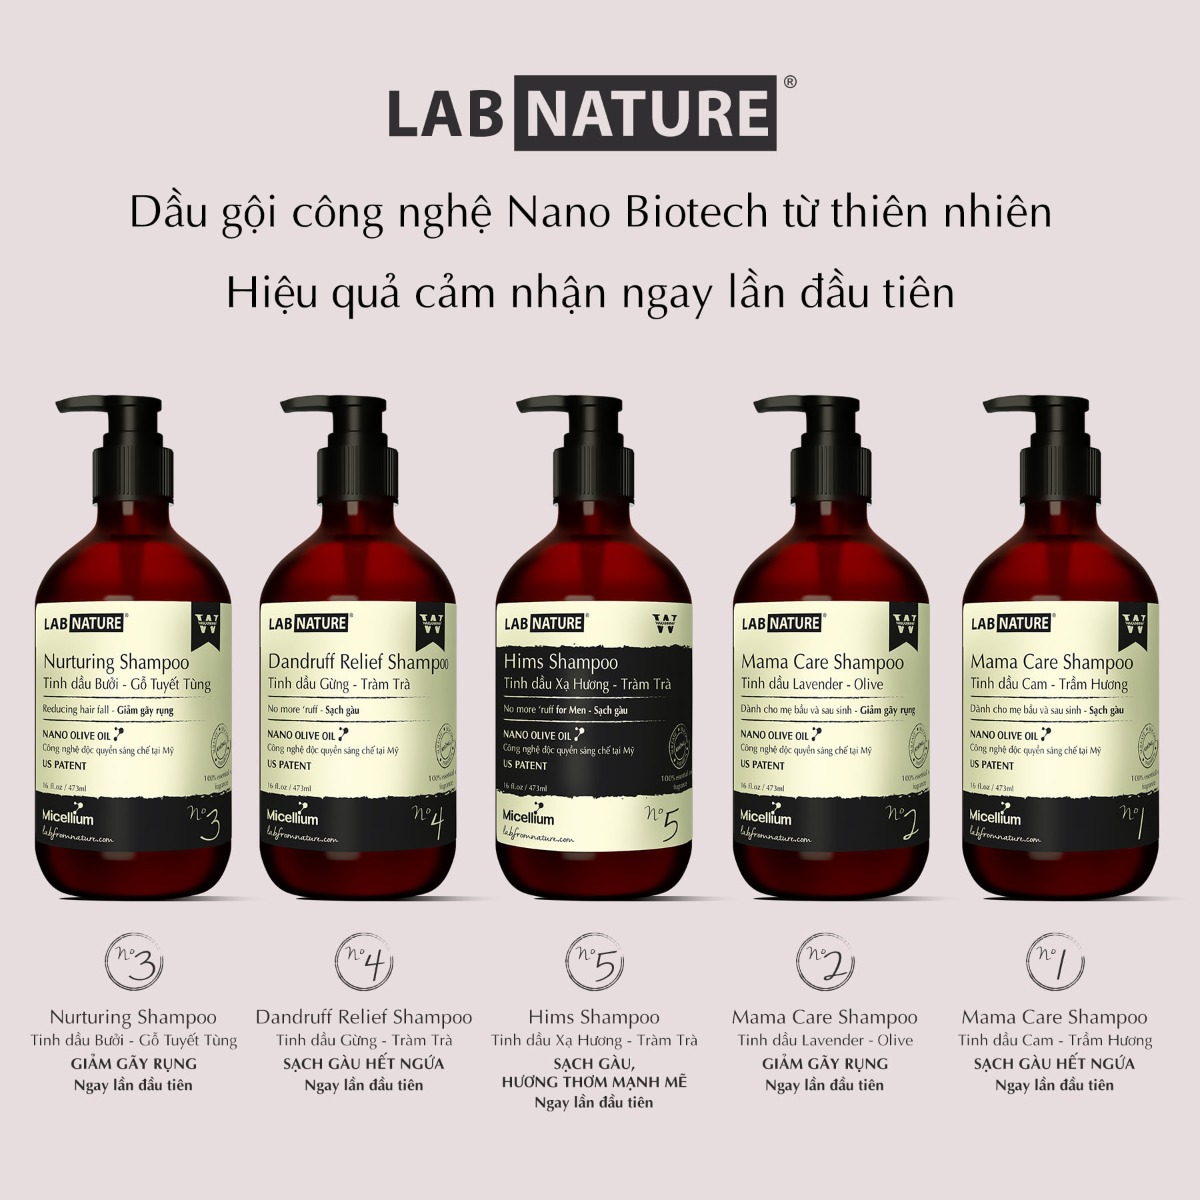 Dầu Gội Lab Nature Giảm Gãy Rụng Nurturing No 03 473ml Nurturing Shampoo - Tinh dầu Bưởi & Gỗ Tuyết Tùng